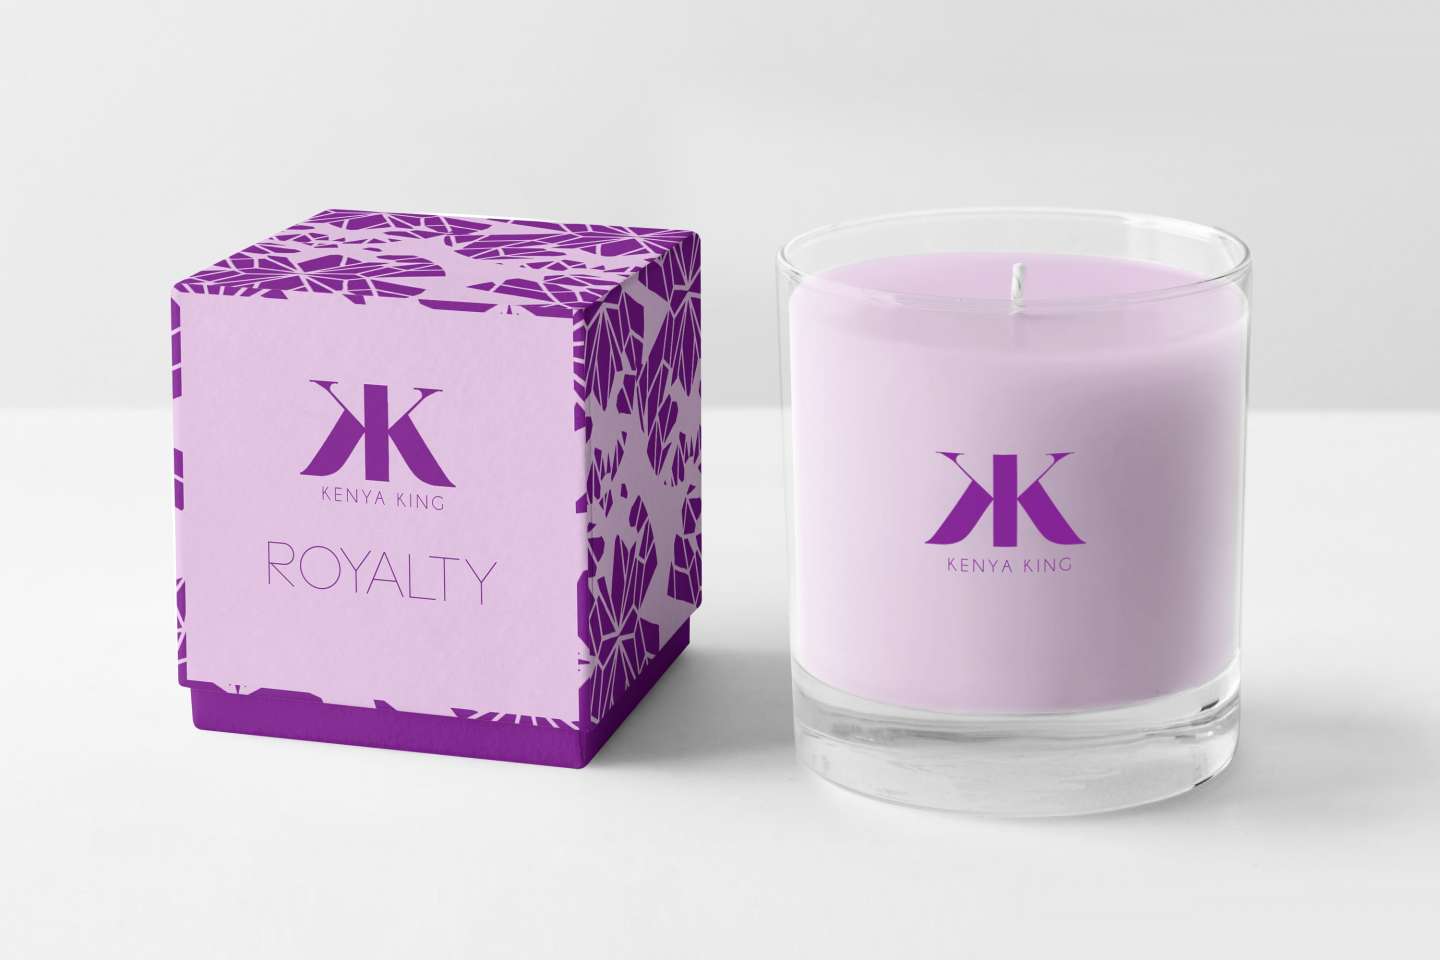 Kenya King Perfume